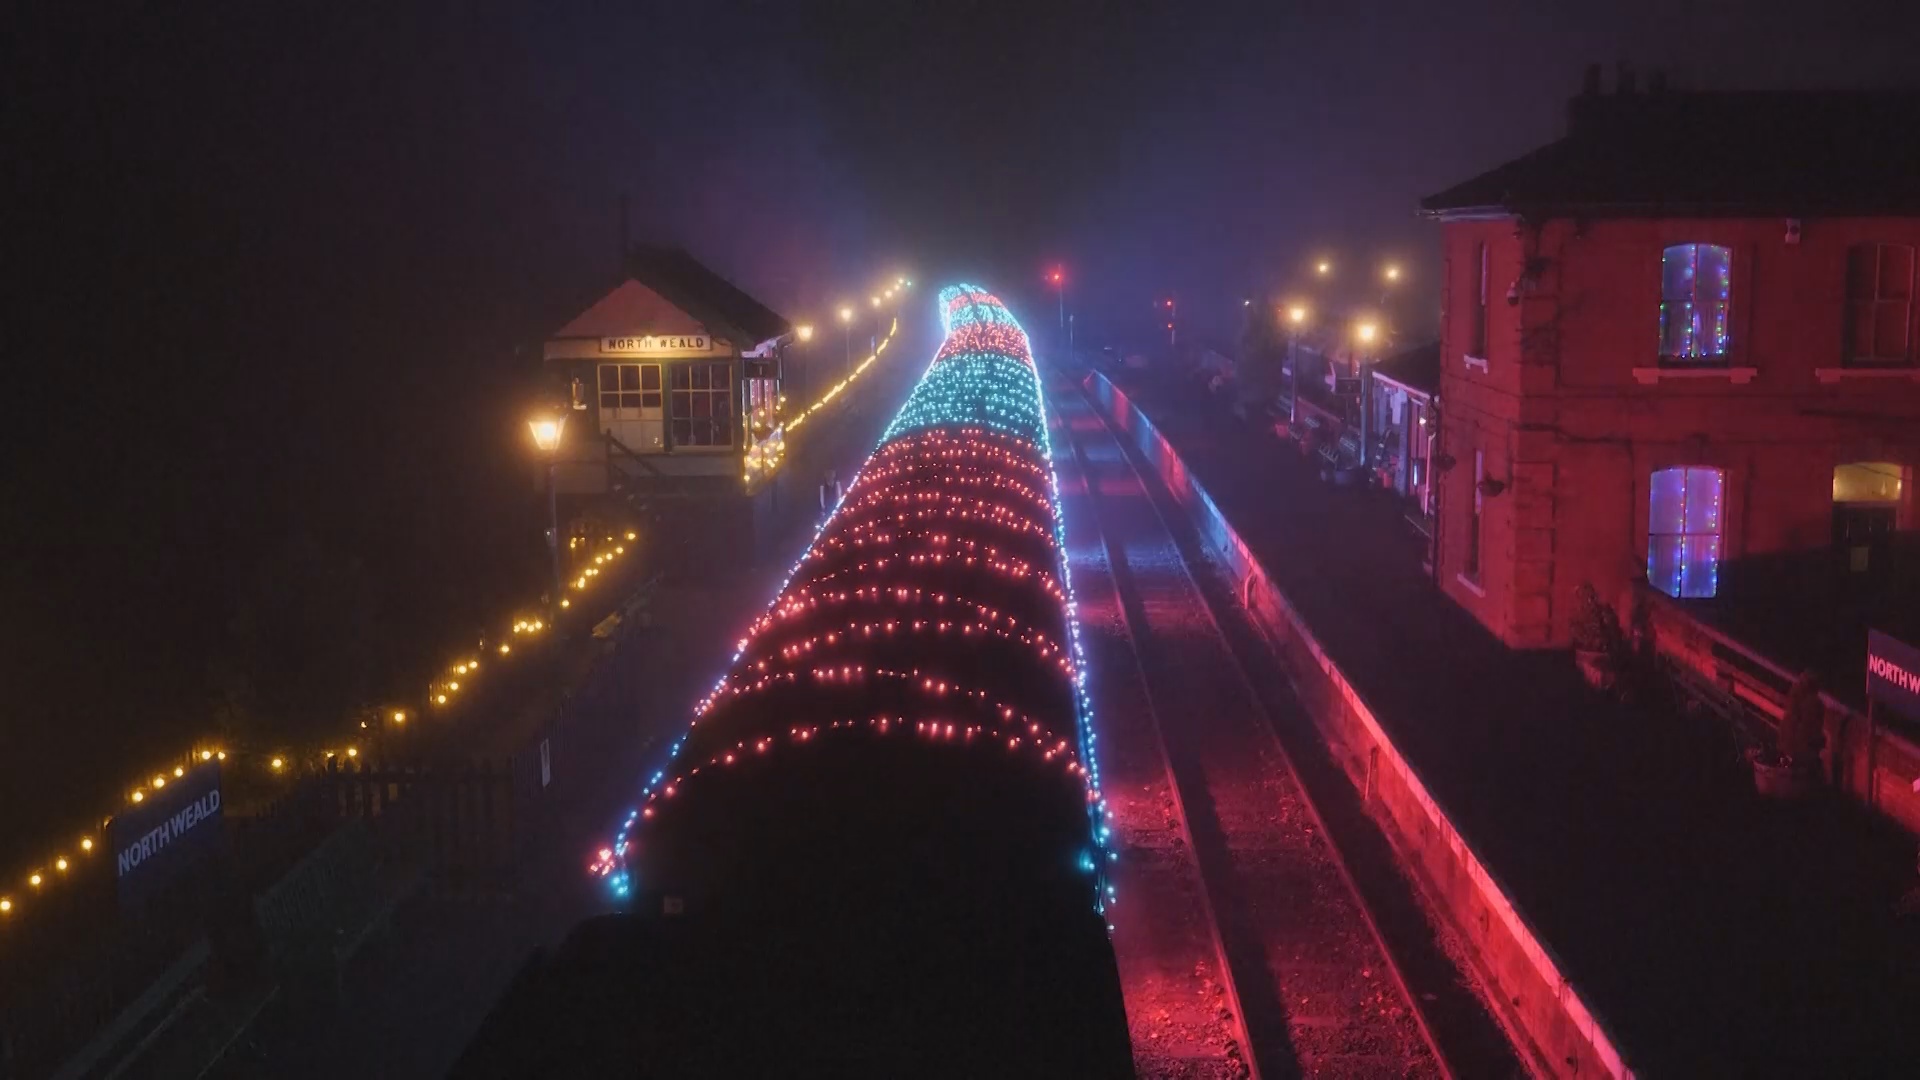 Рождественский поезд с 18 000 лампочек дарит праздник пассажирам в Великобритании